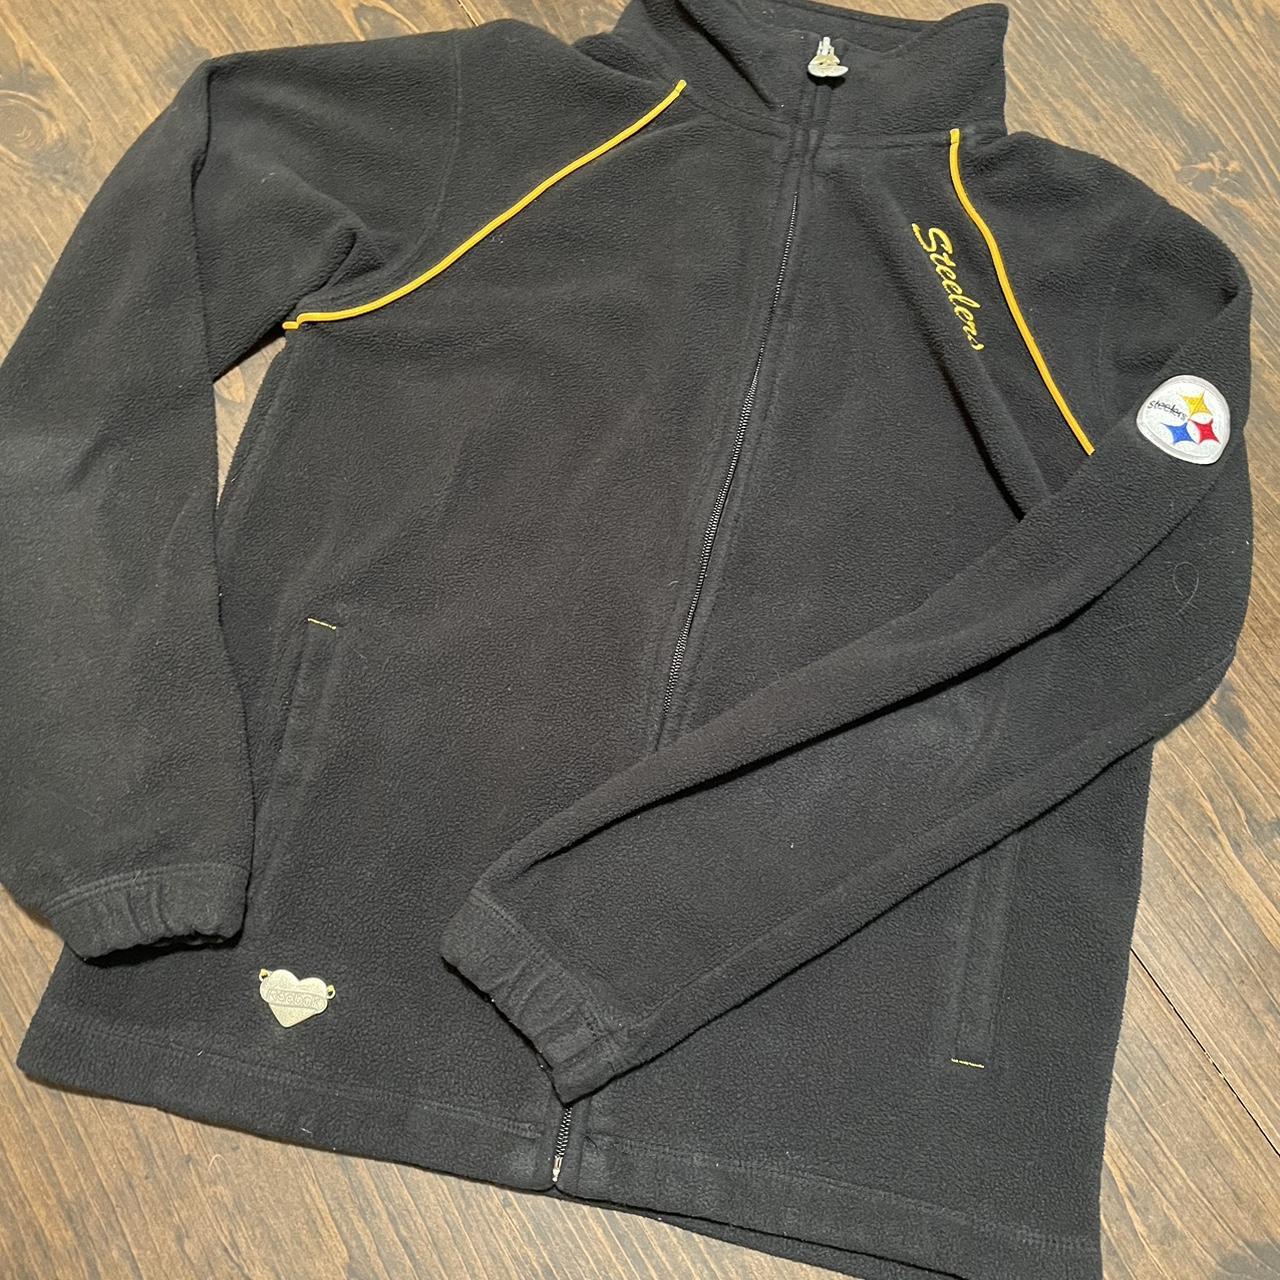 NFL Women's Casual Jacket - Black - S